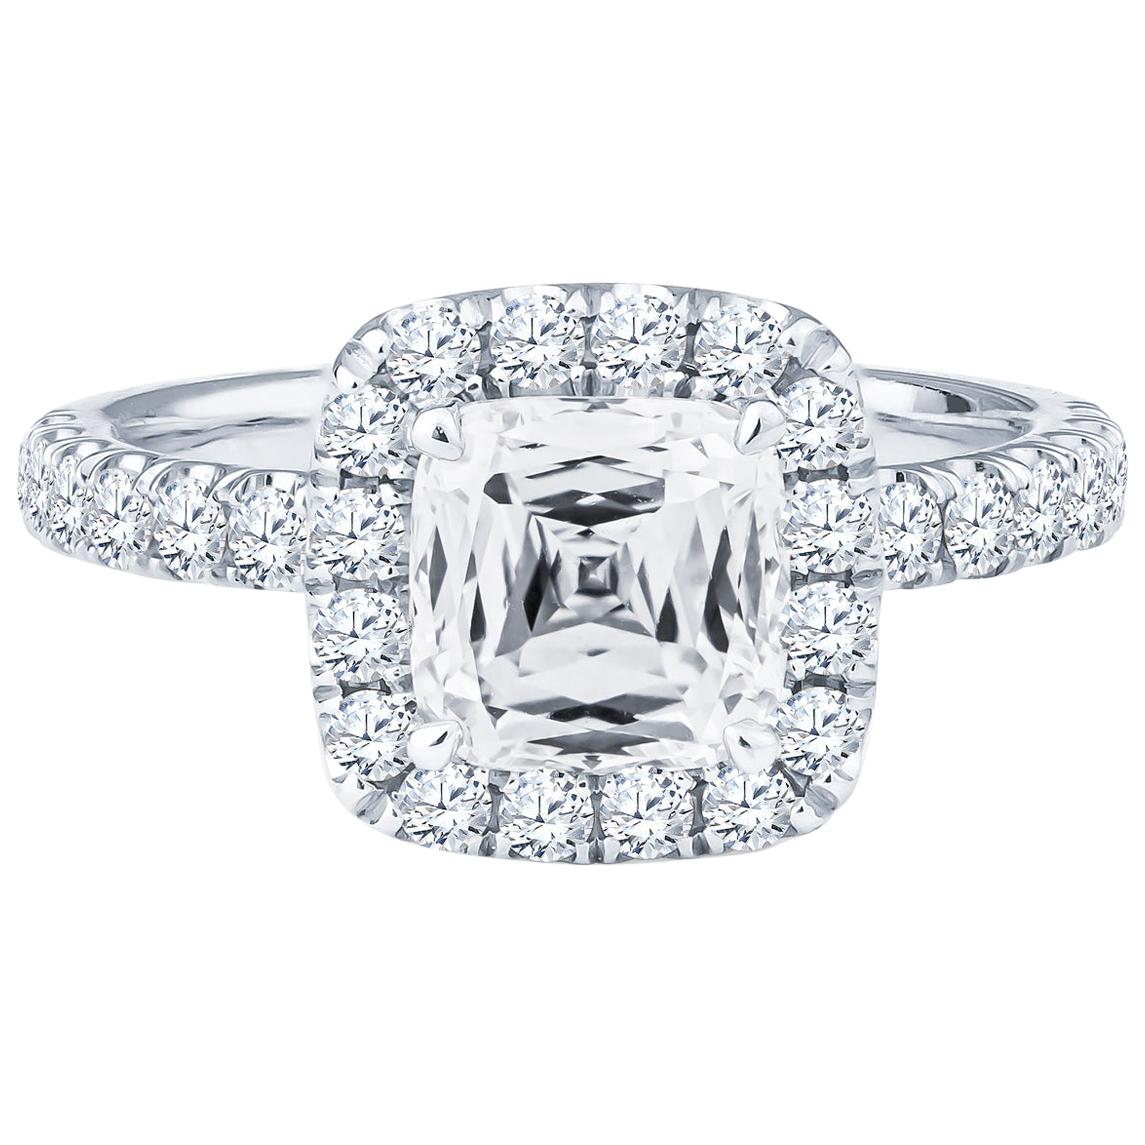 1.60 Carat Crisscut Cushion Diamond Ring, GIA Certified